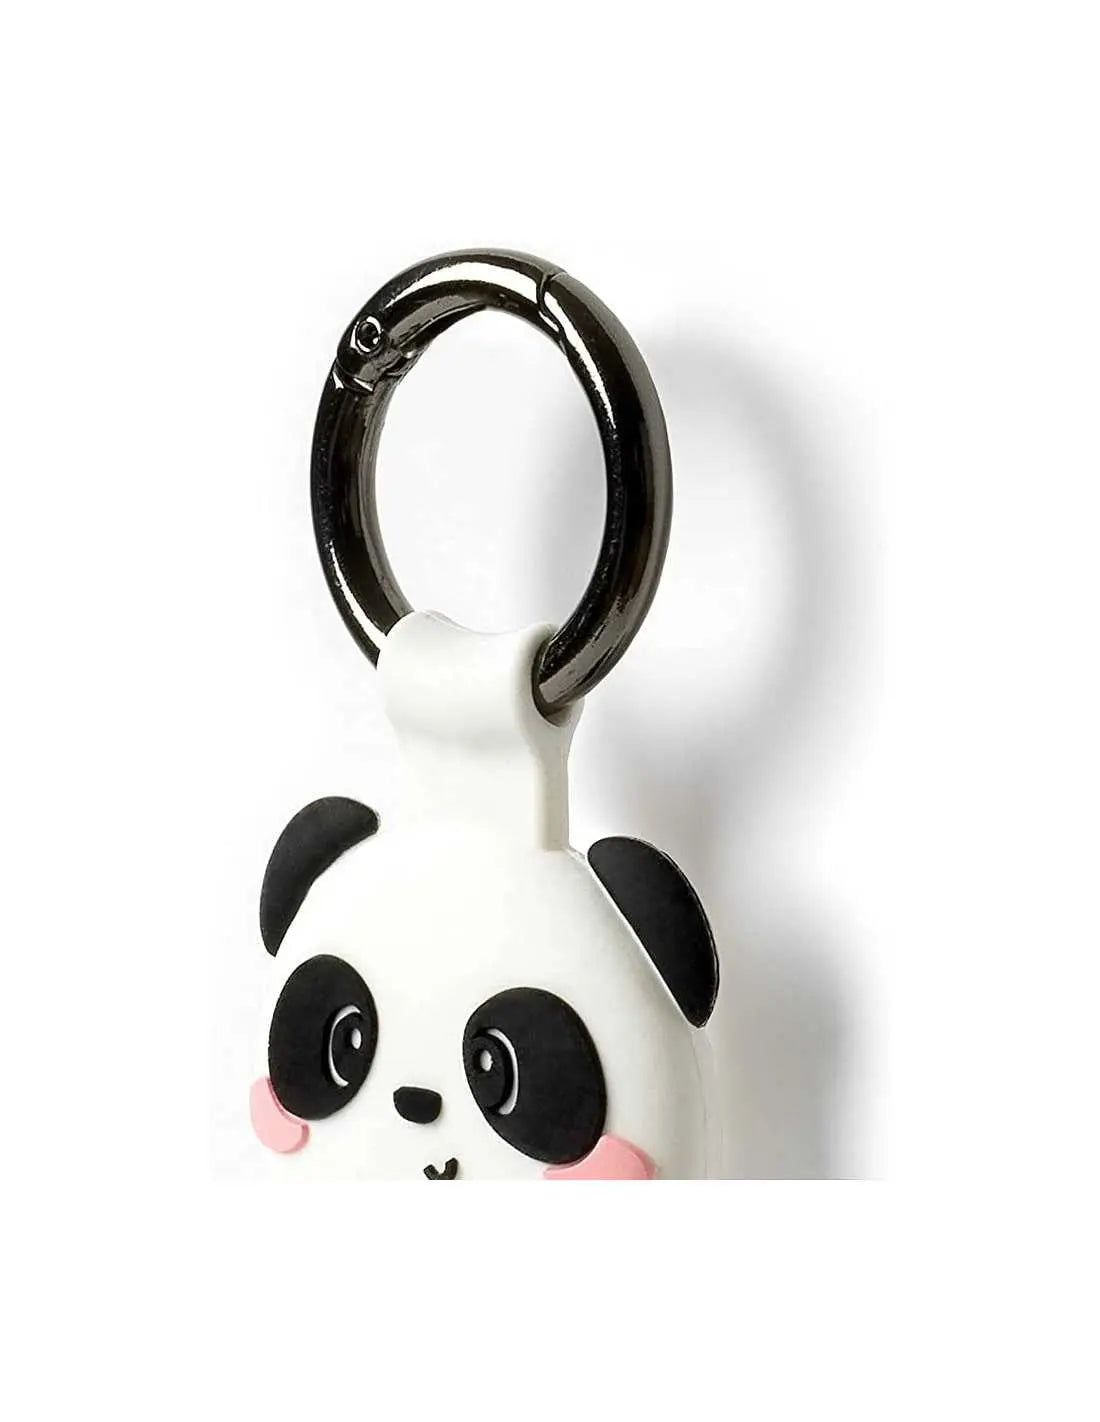 https://tecin.eu/cdn/shop/products/Legami-Porte-cles-pour-AirTag---Panda-boutiquesdemusees-1674728780.jpg?v=1674728782&width=1946